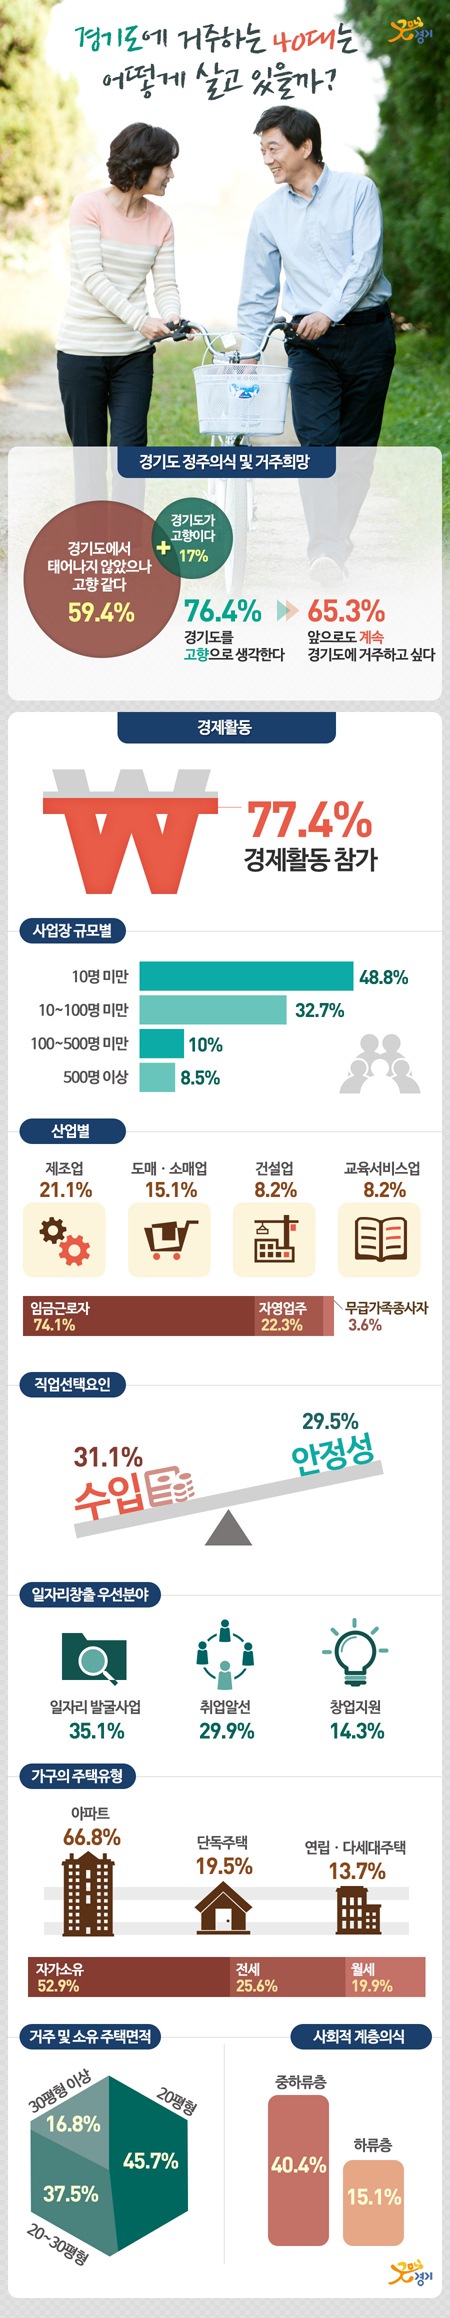 23일 경기도가 발표한 ‘2014사회조사 결과’에 따르면 경기도에서 태어나지 않았지만 ‘도가 고향 같다’고 응답한 40대는 59.4%인 것으로 조사됐다.